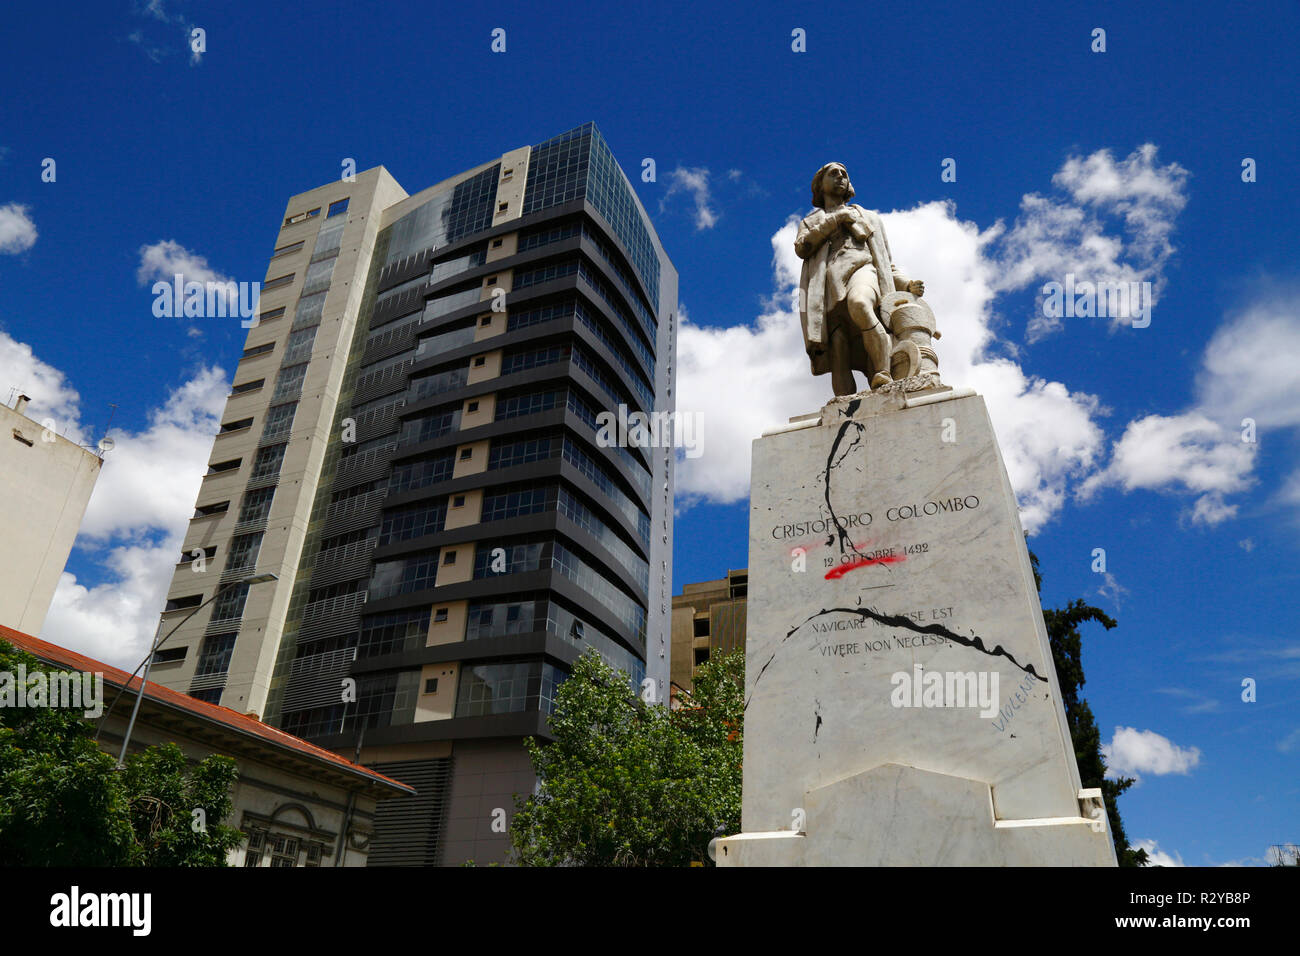 Vandalizzato Monumento a Cristoforo Colombo in segno di protesta contro il trattamento delle popolazioni indigene dai colonizzatori europei, La Paz, Bolivia Foto Stock